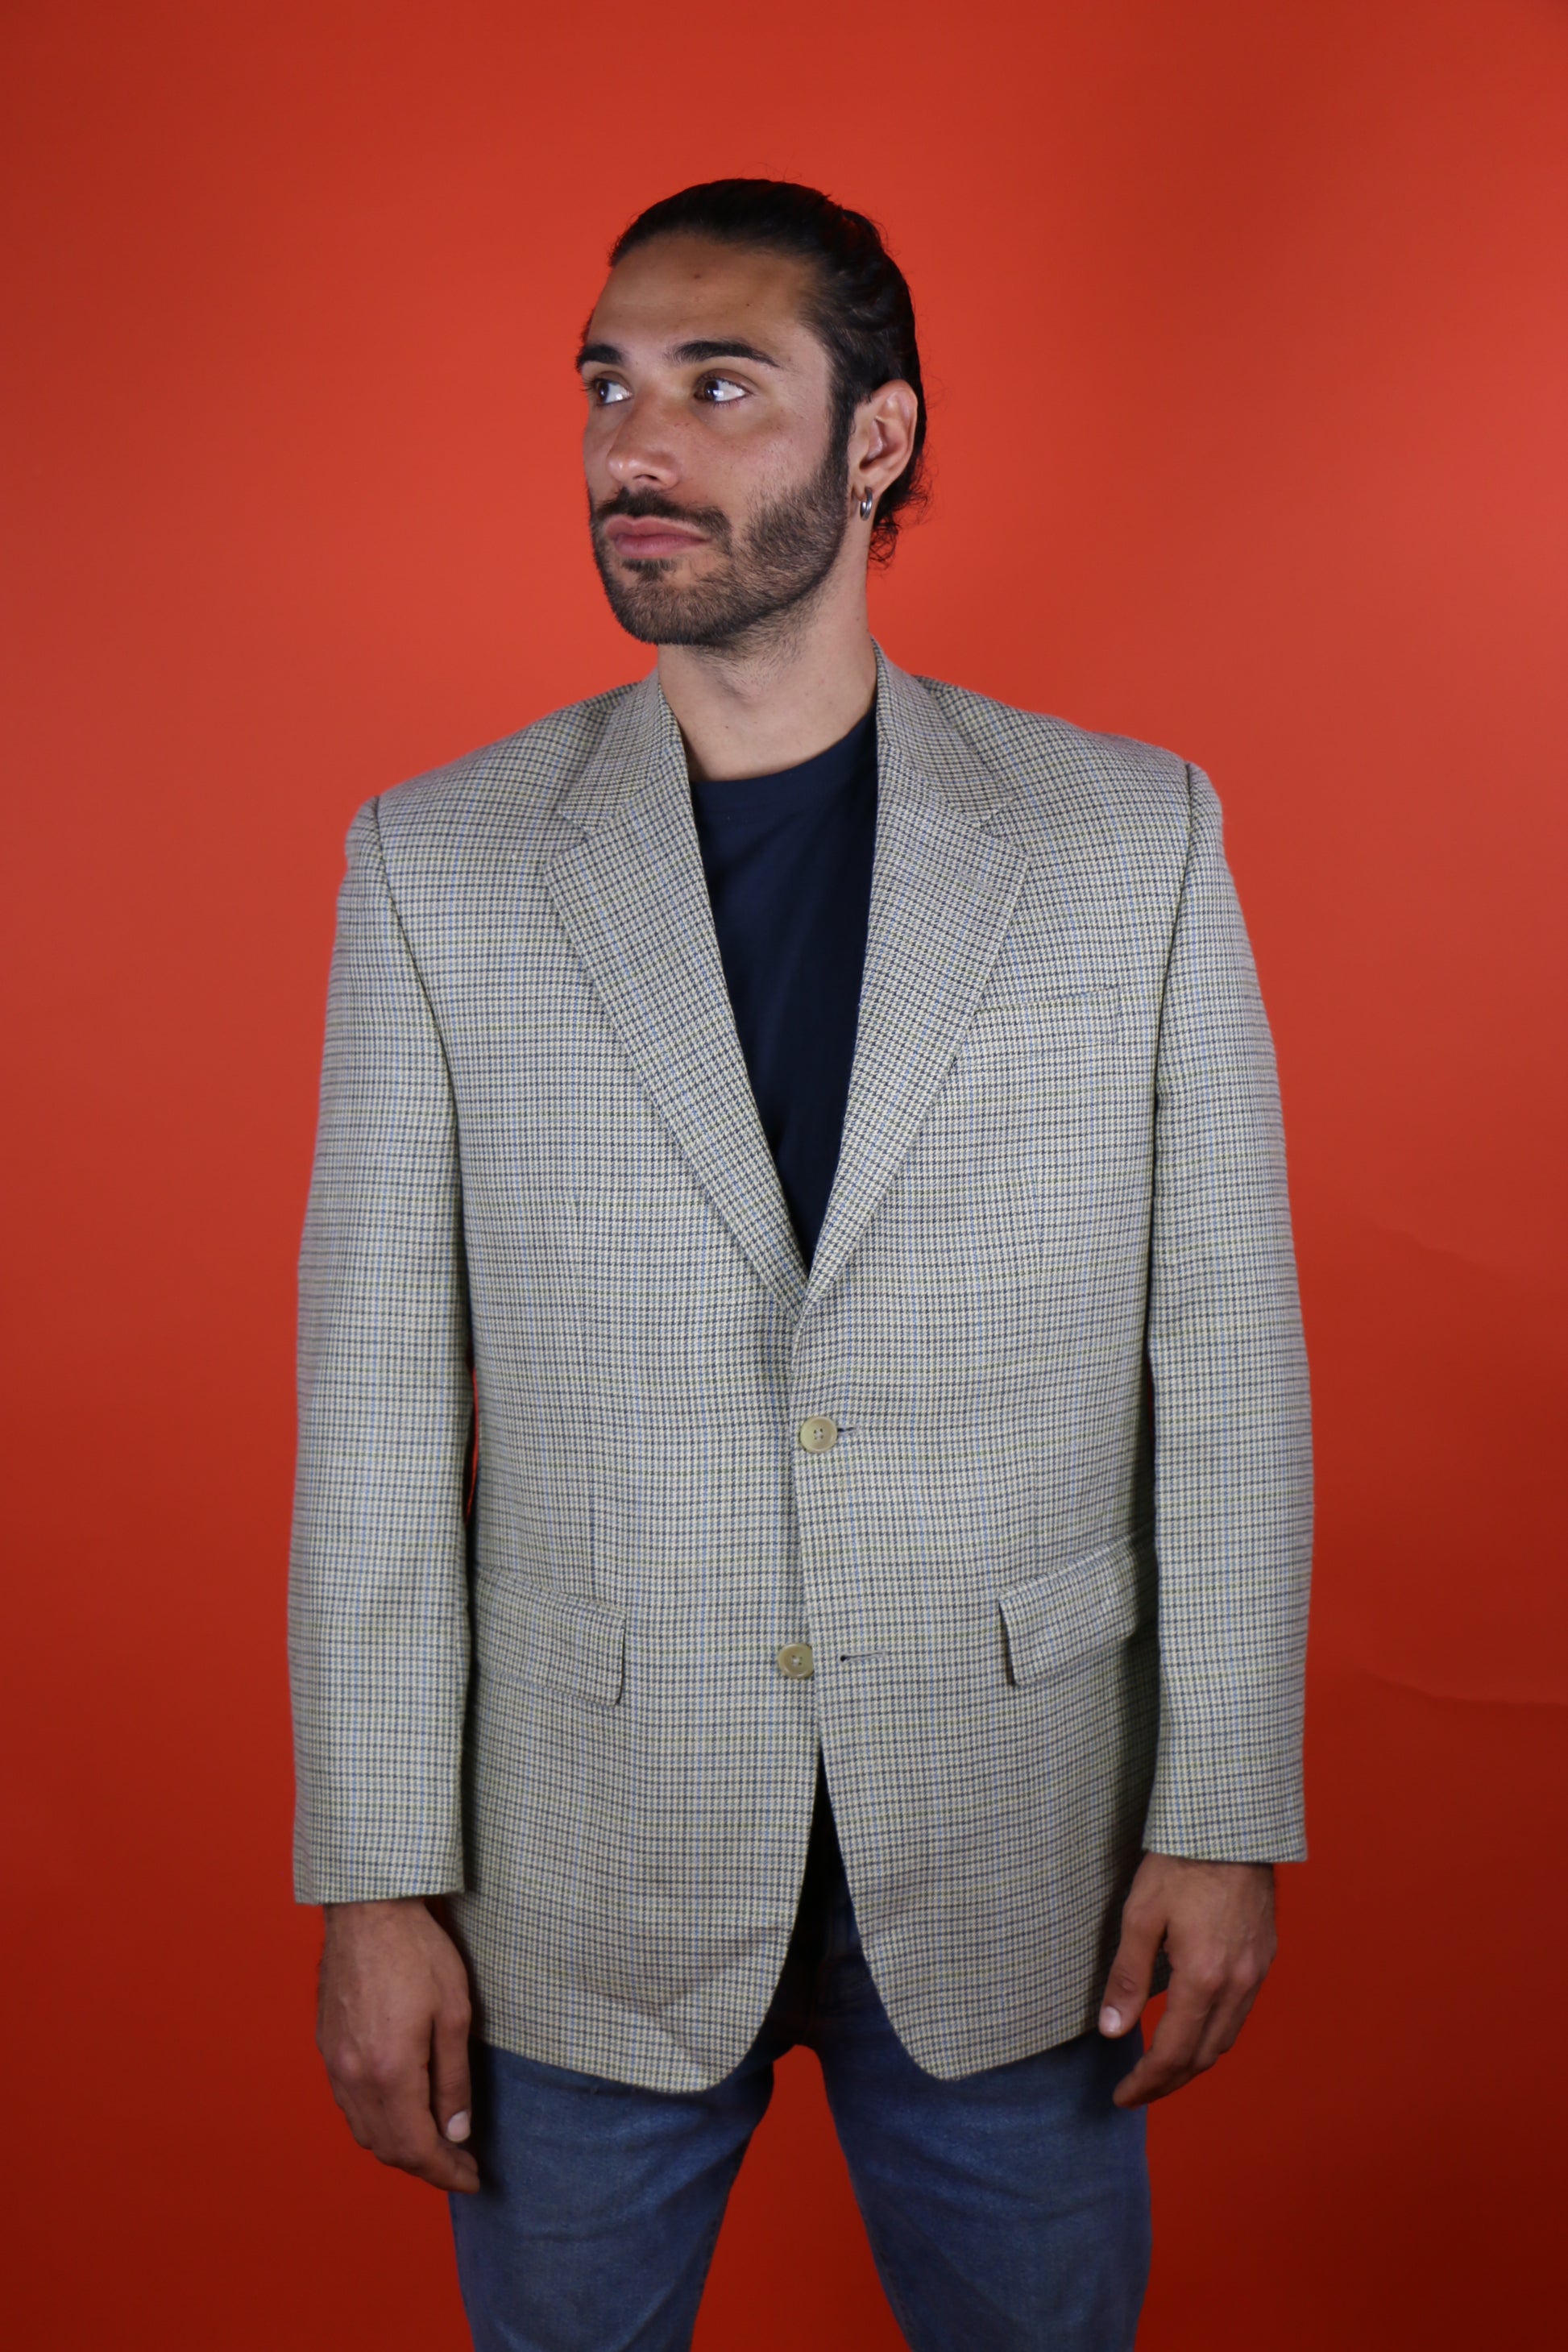 Ralph Lauren Suit Jacket - vintage clothing clochard92.com